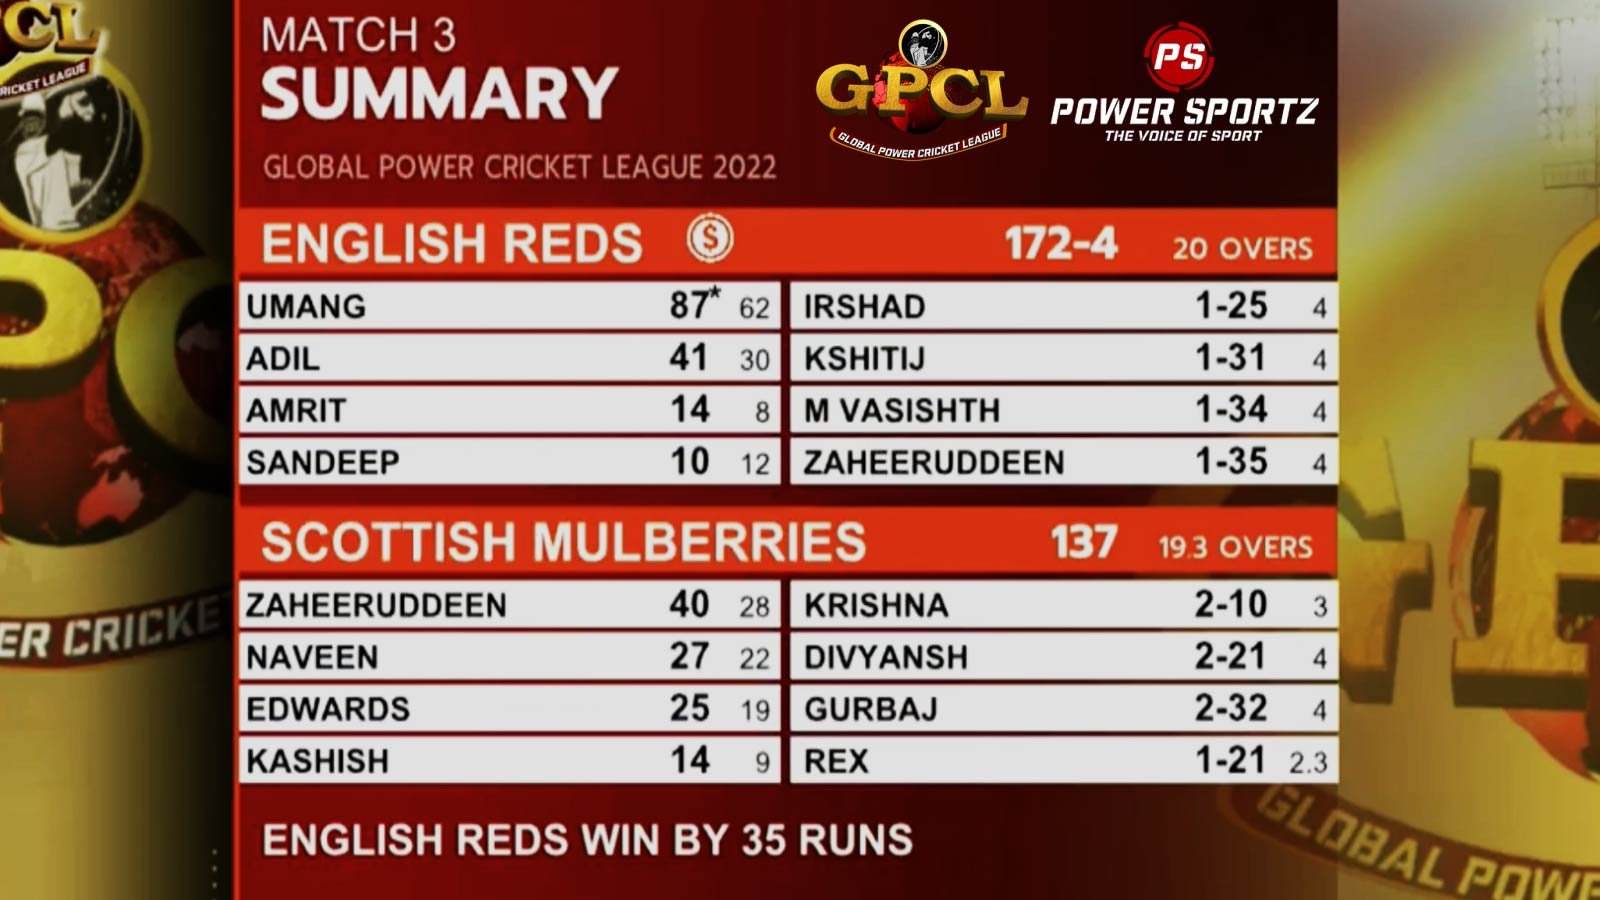 English Reds vs Scottish Mulberries (Image Credits: Twitter)